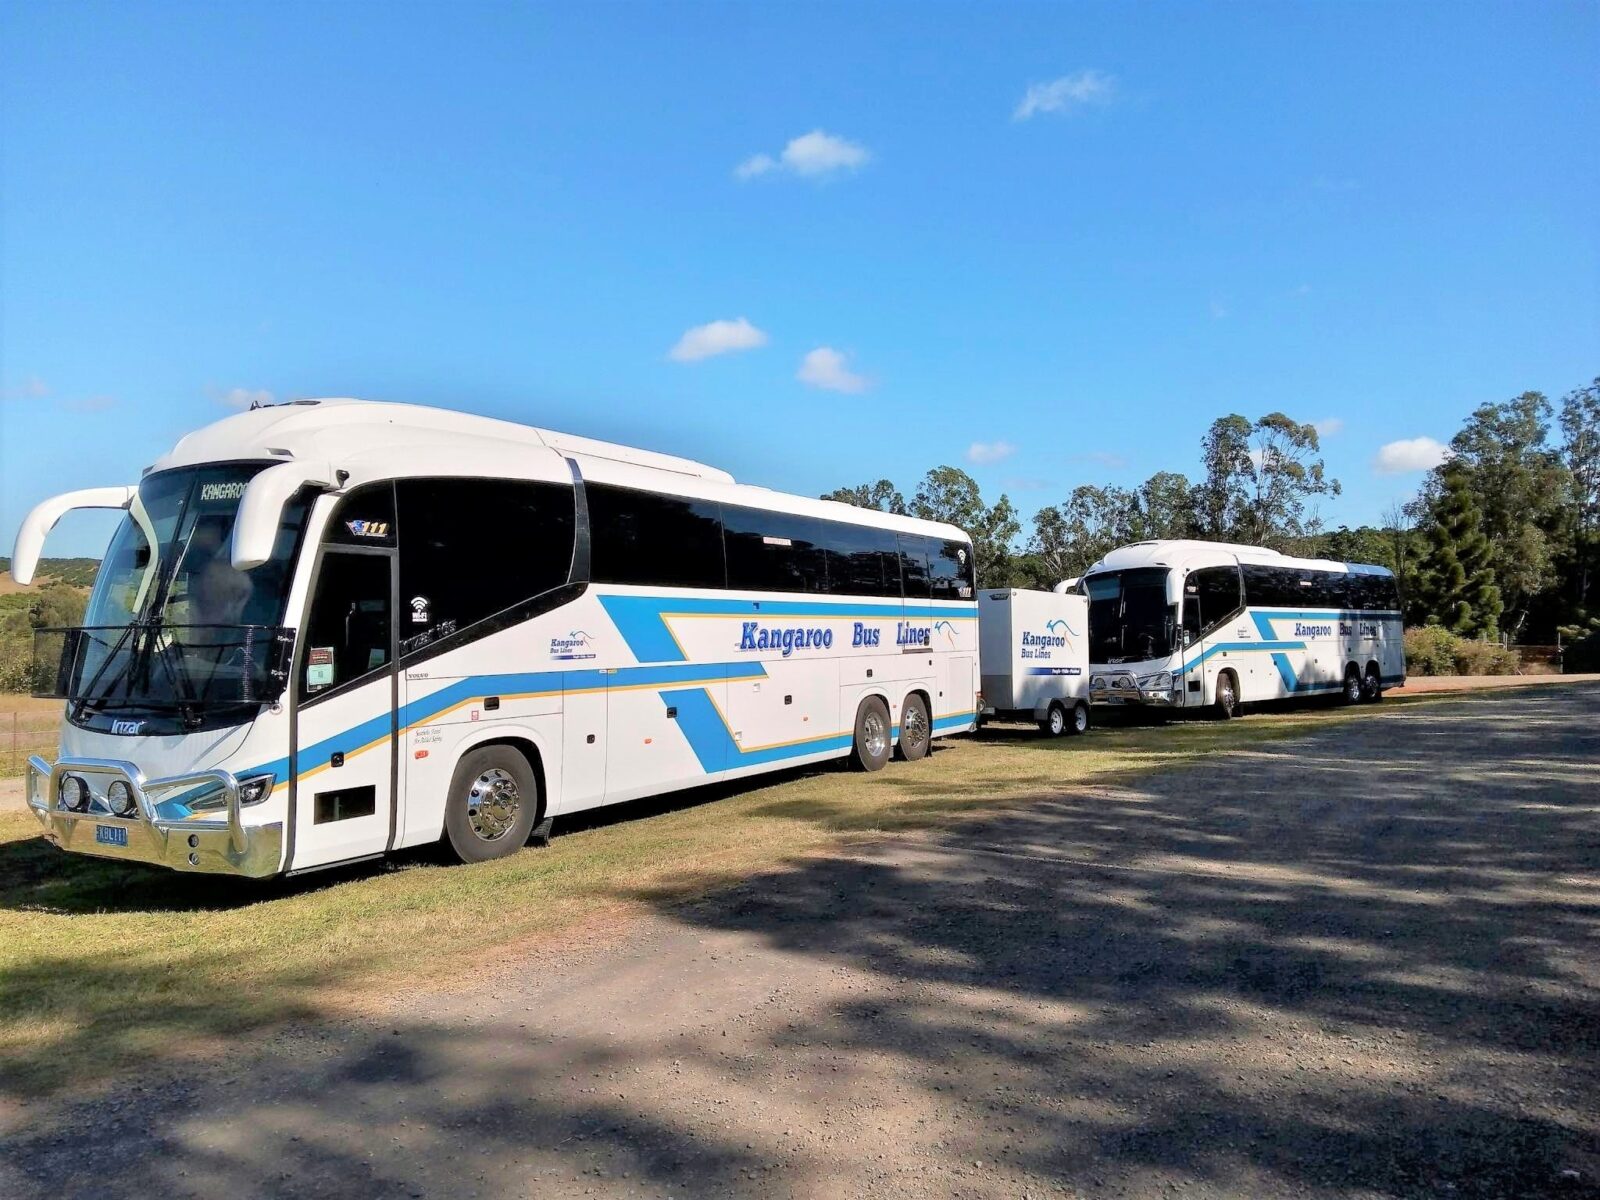 kangaroo bus lines day trips